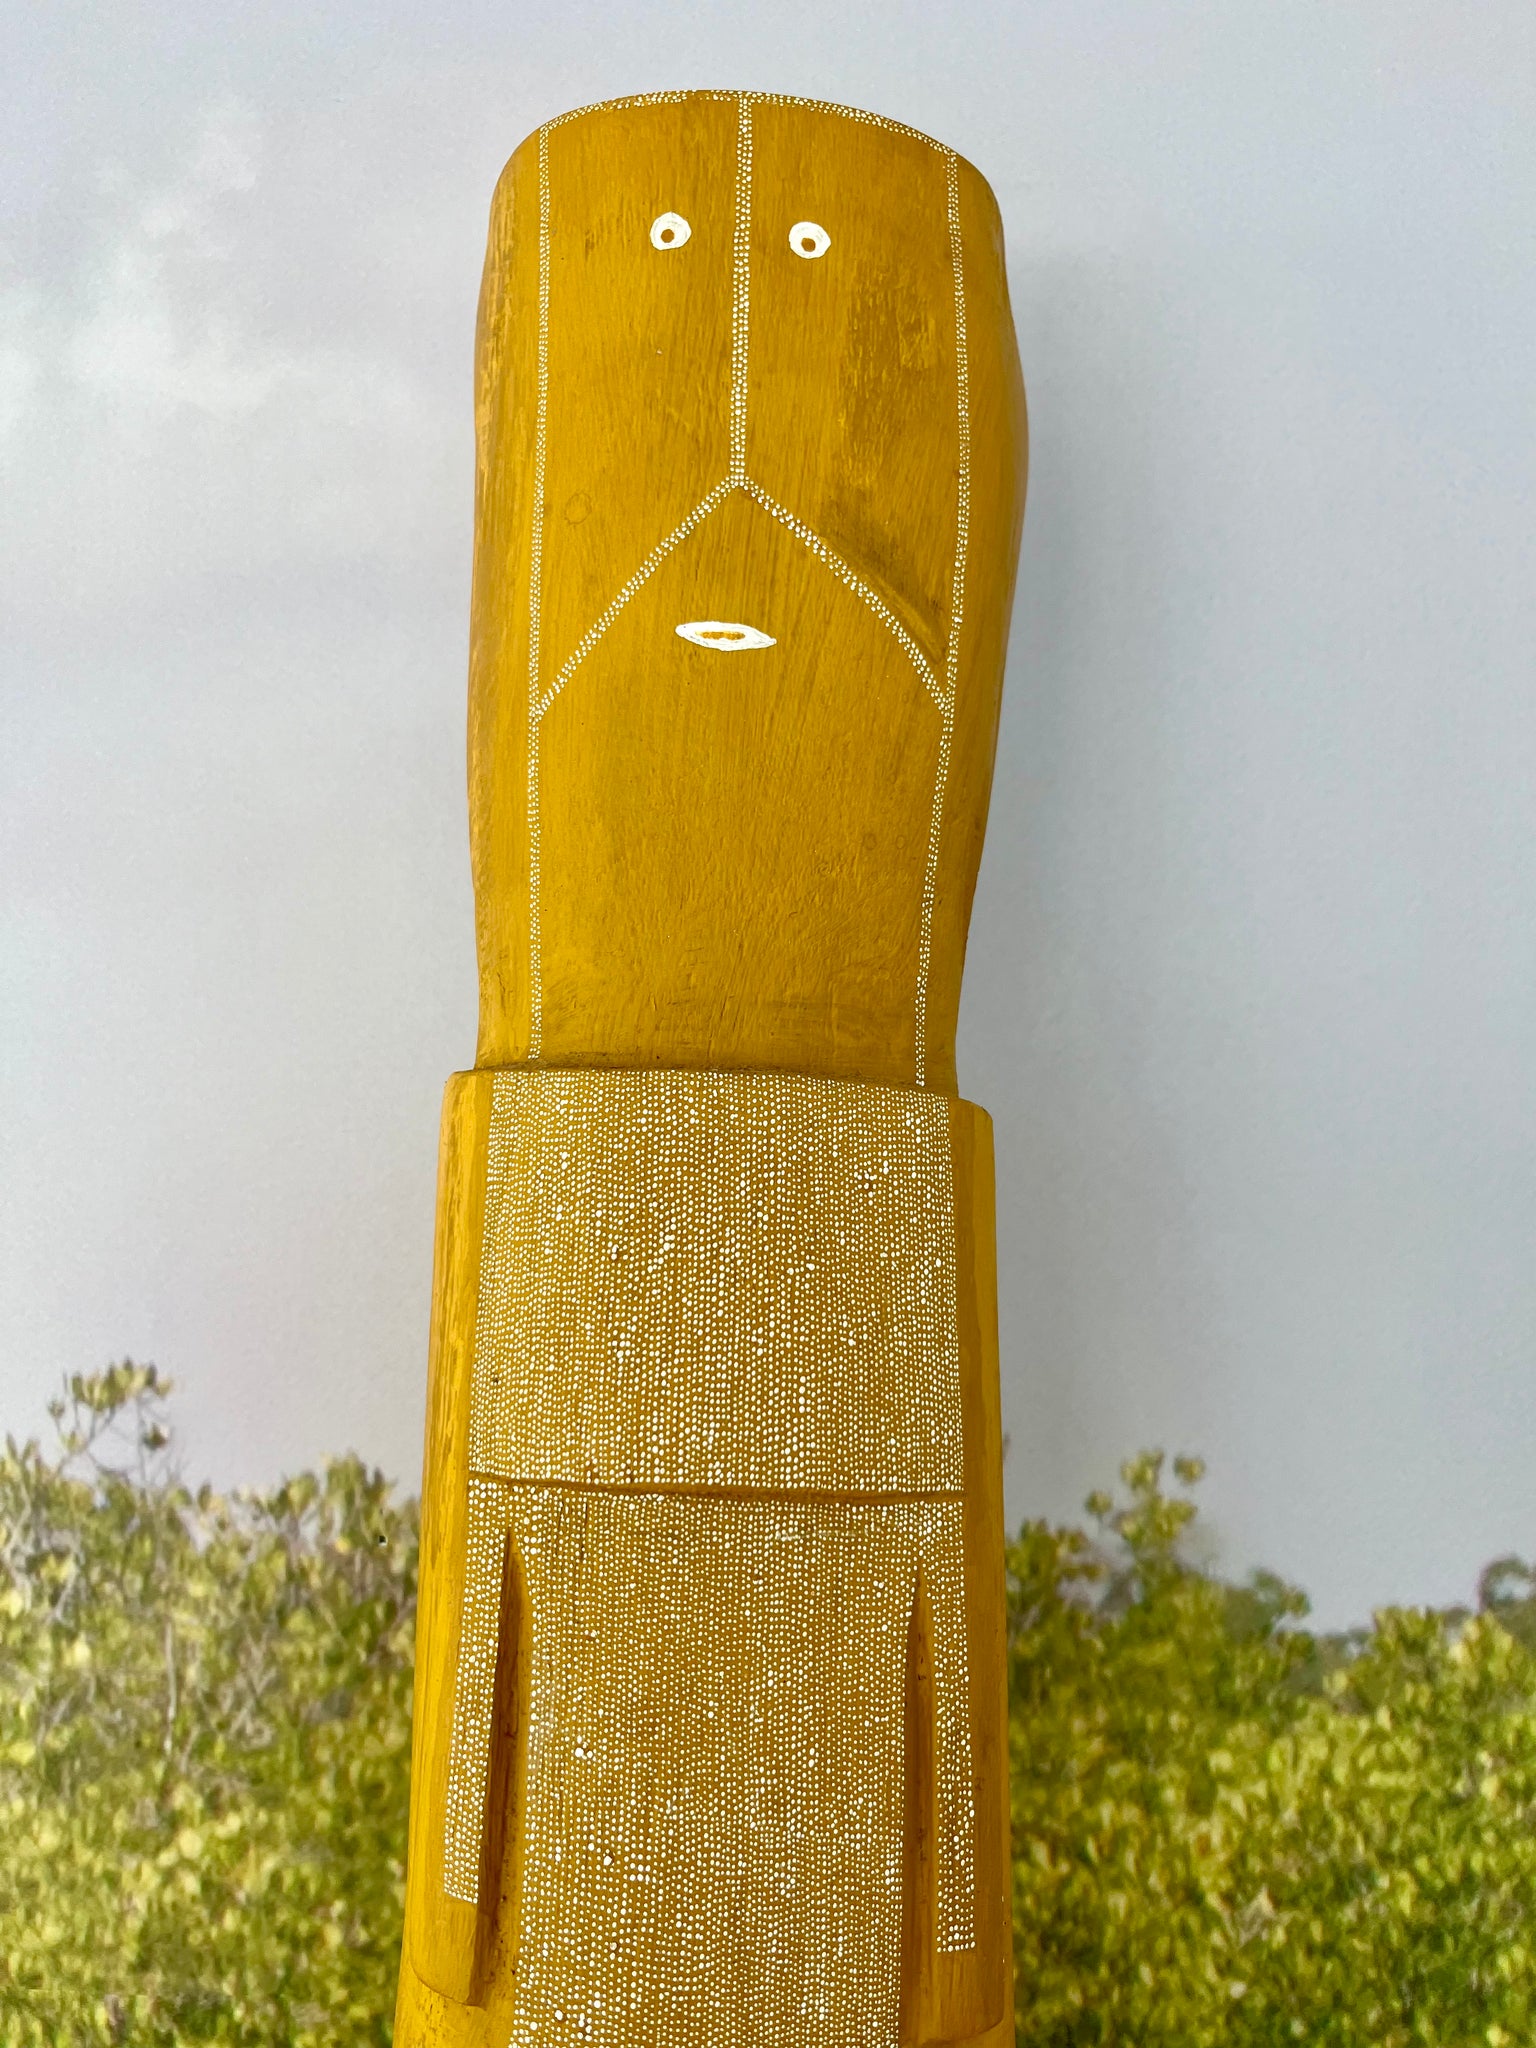 Yawkyawk (105cm)